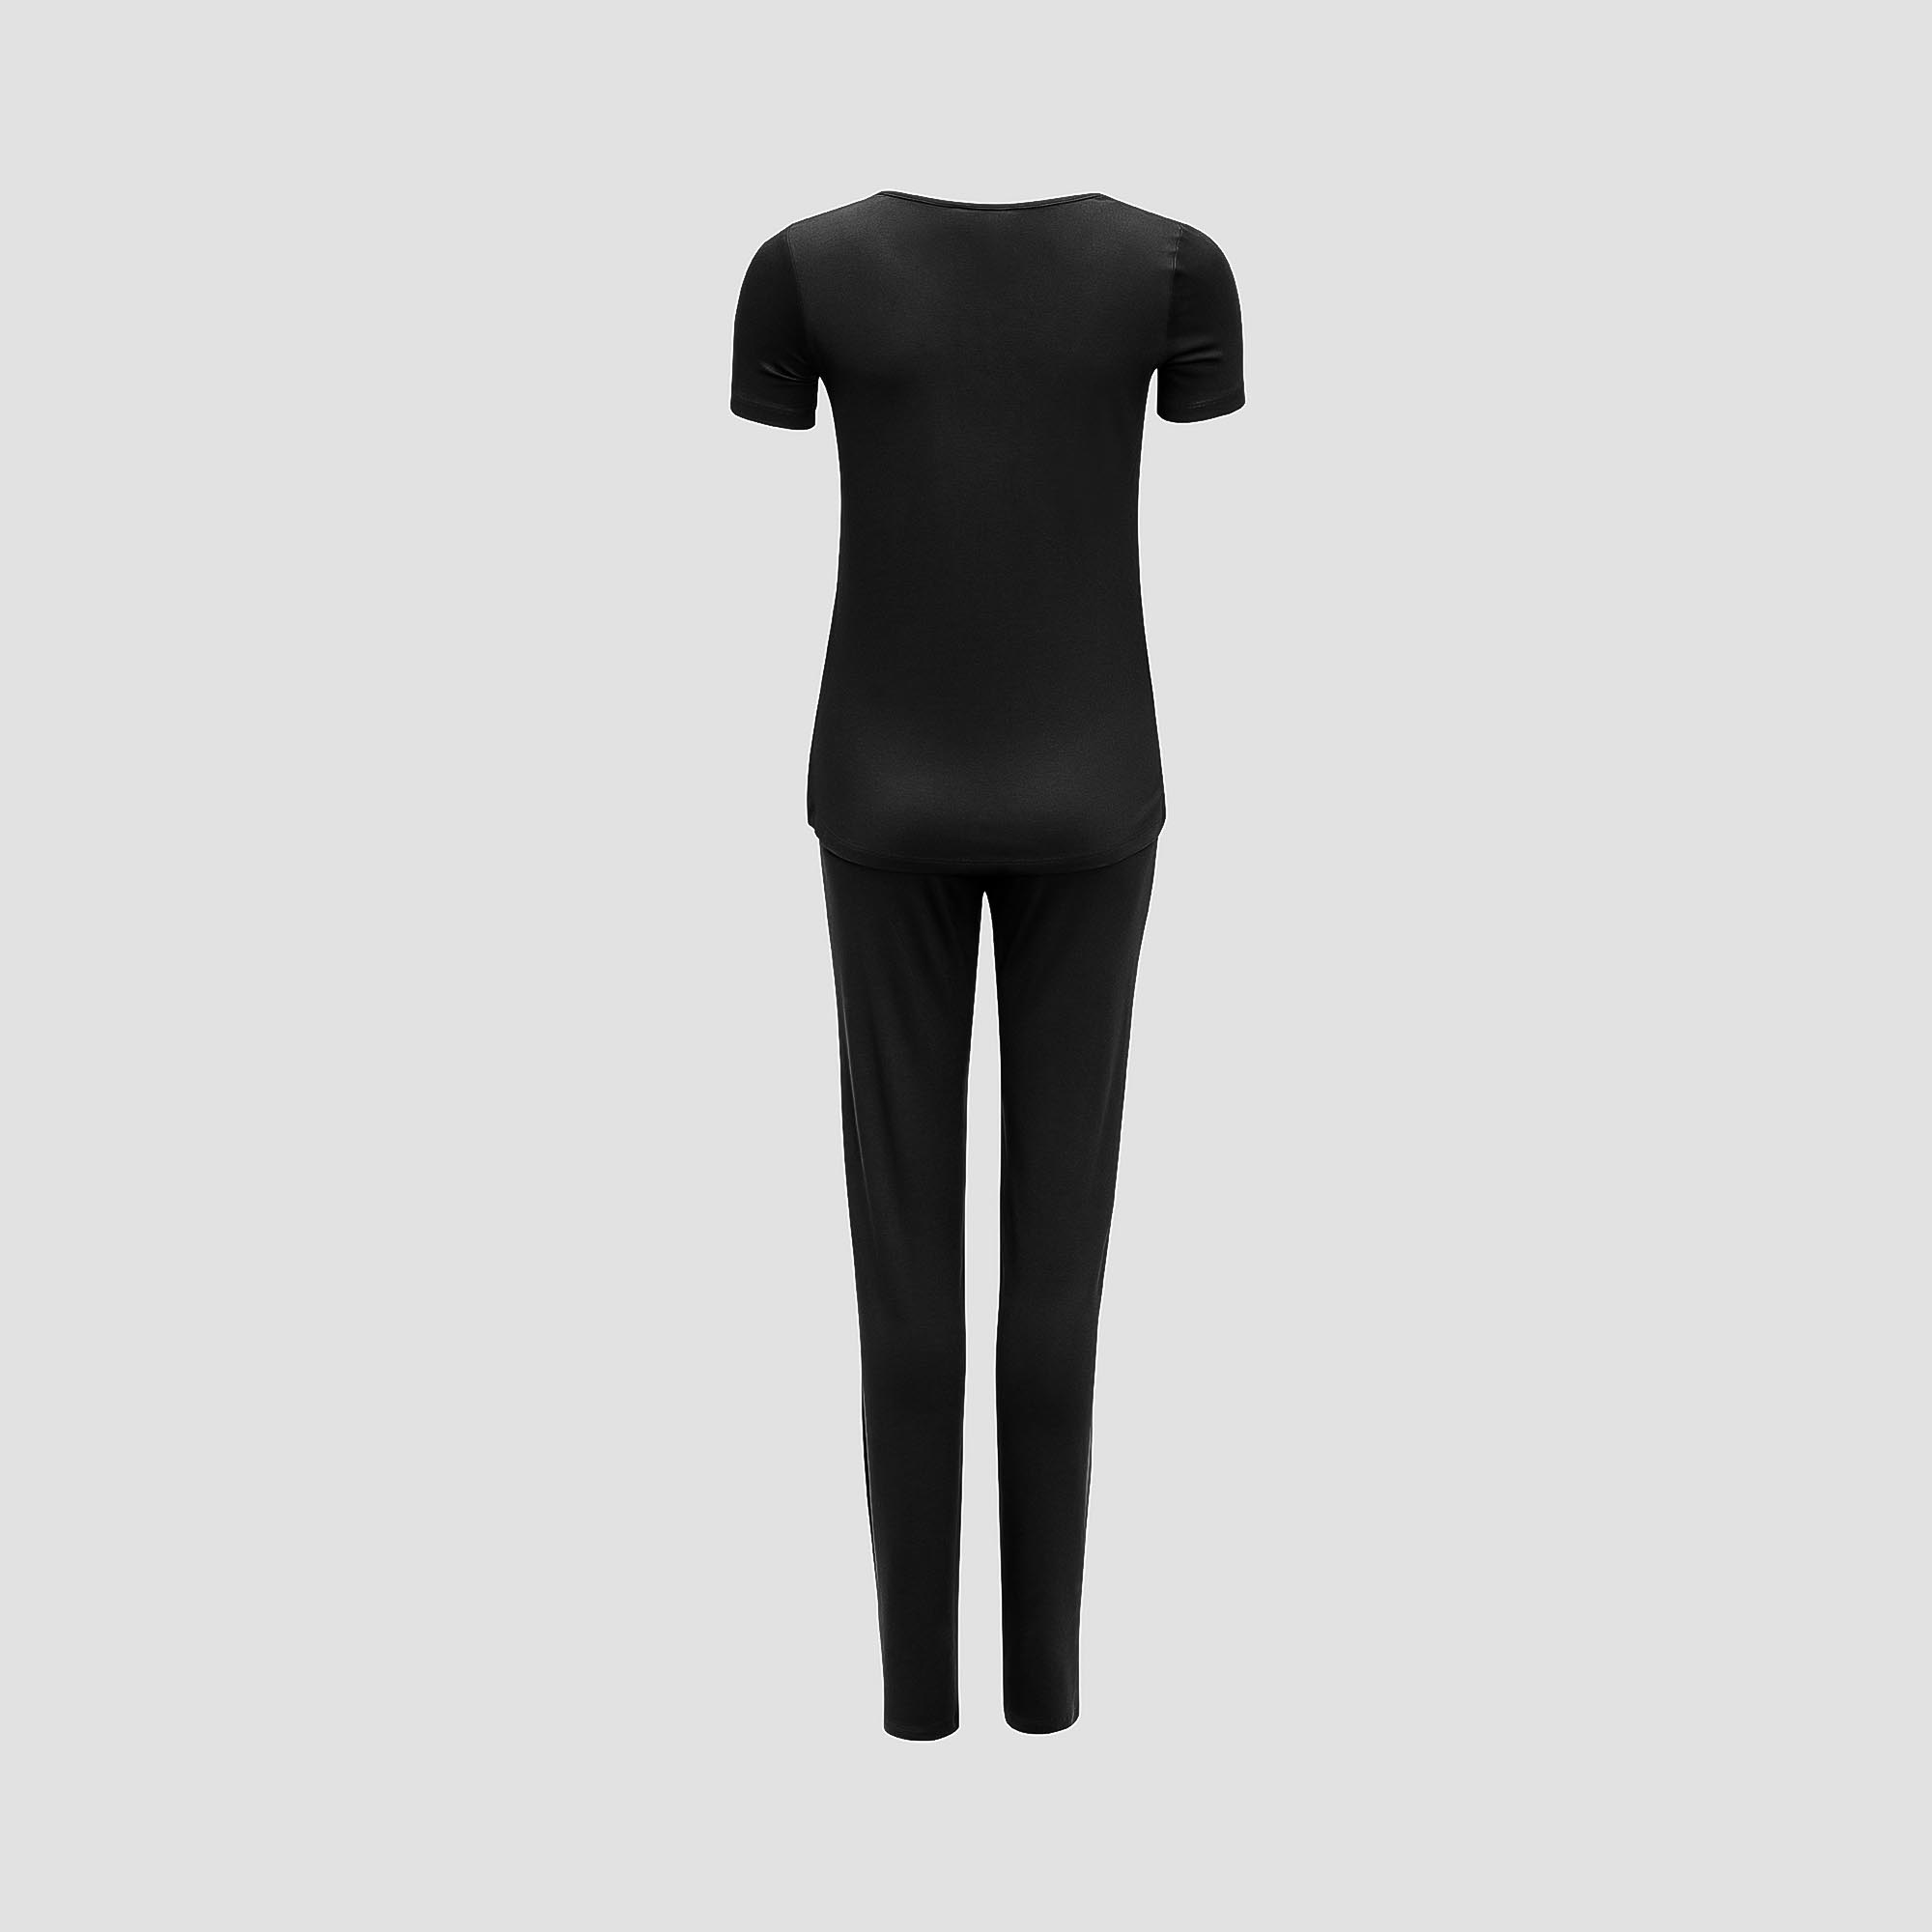 Пижама Togas Ингелла черная женская XL(50) 2 предмета, размер XL(50) - фото 3